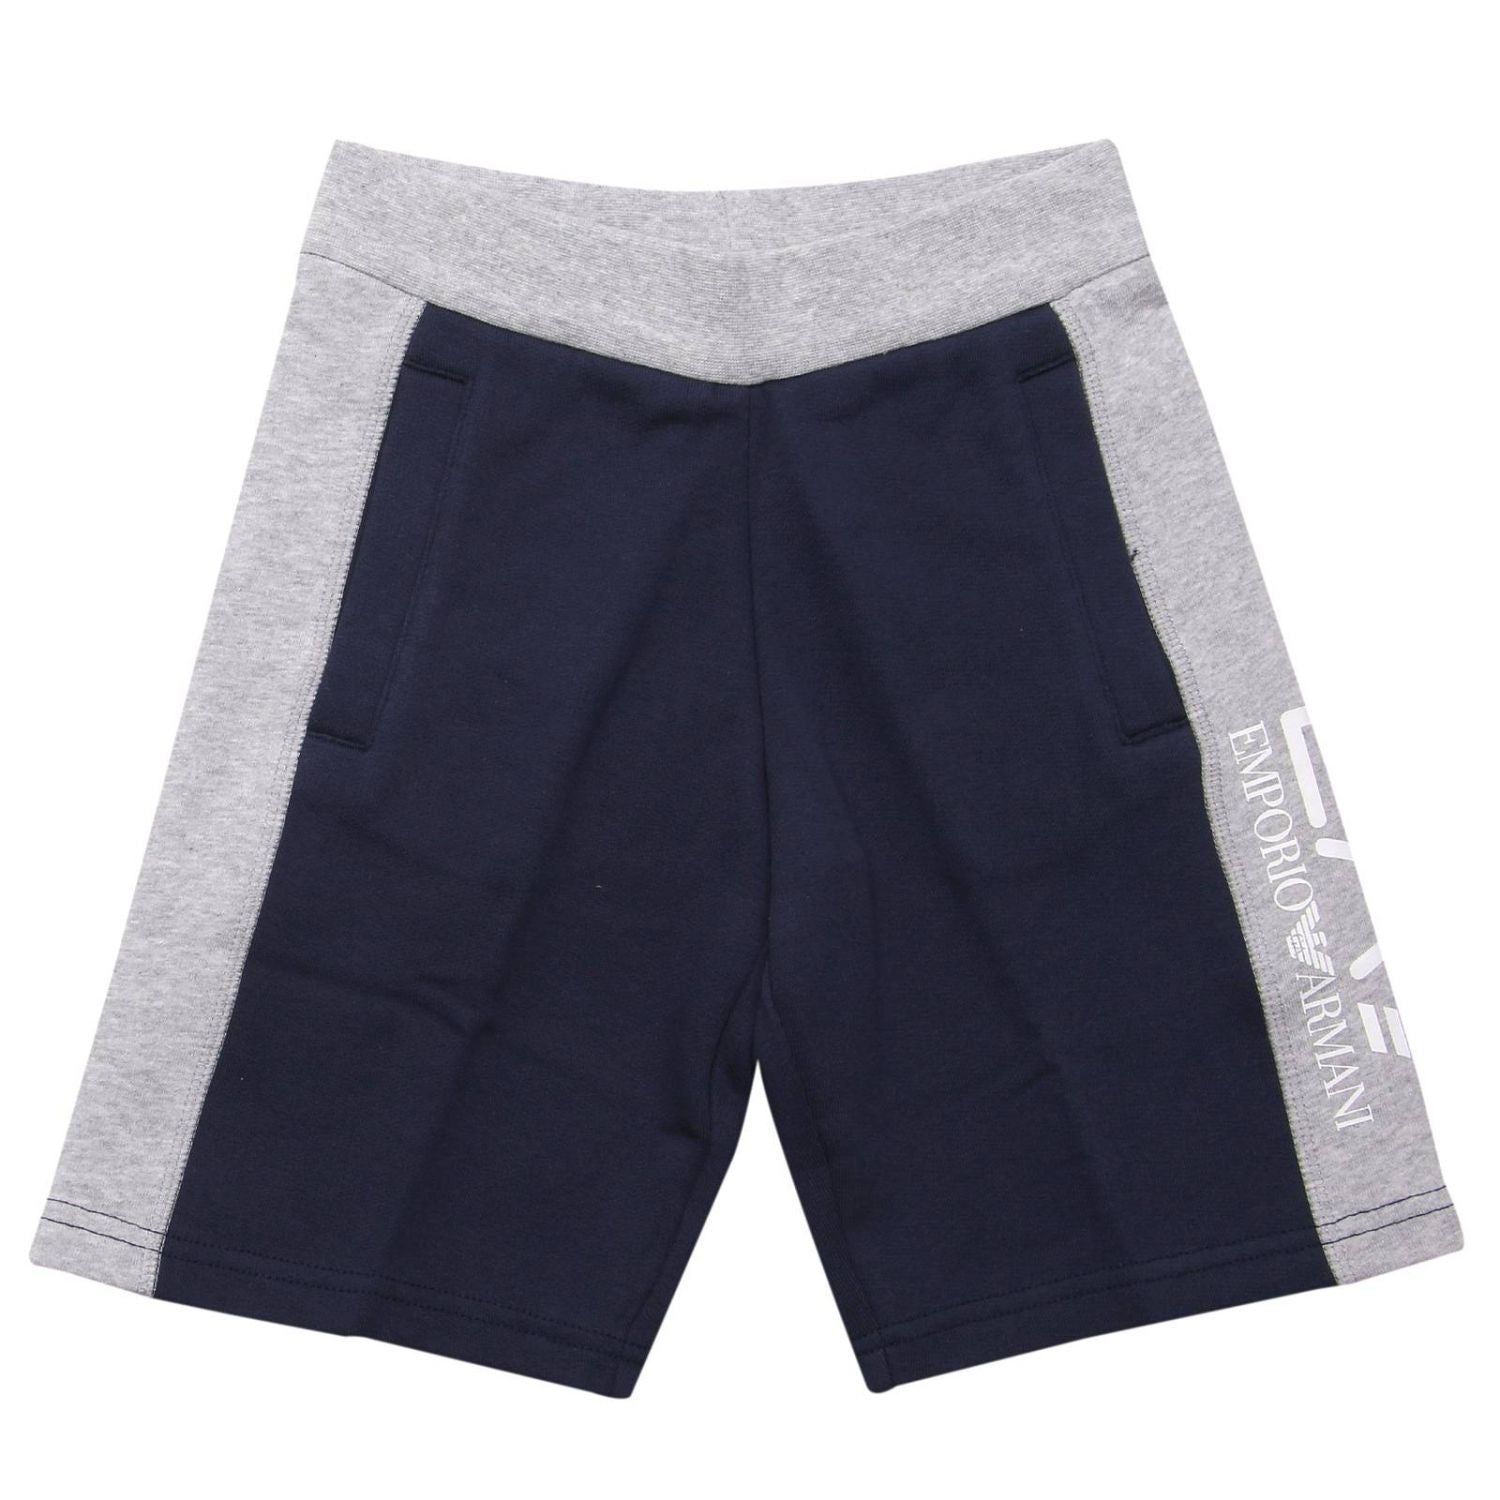 EA7 Emporio Armani Junior Shorts - Blue/Grey